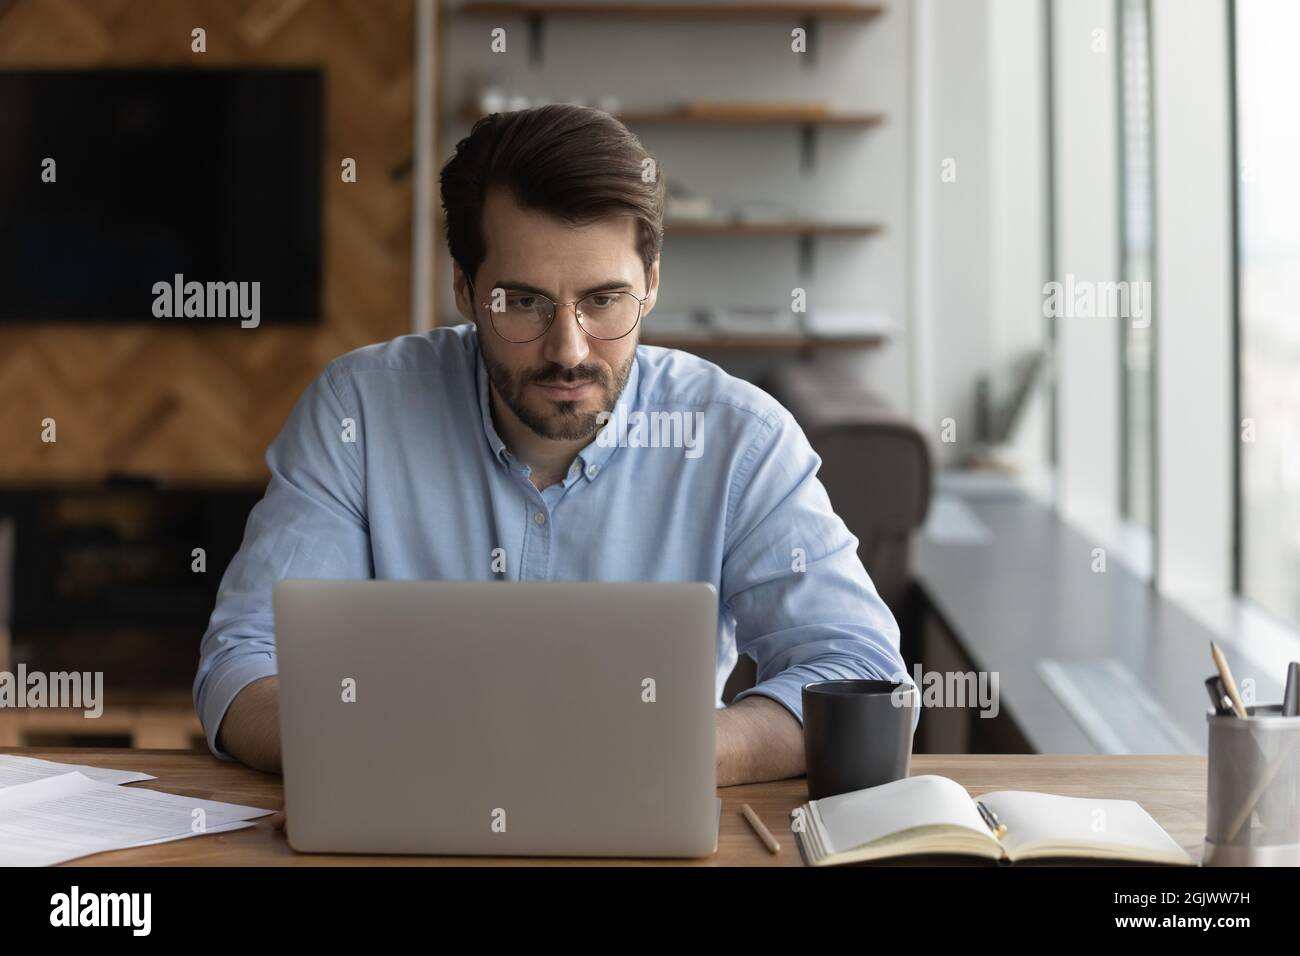 Serious Mann Blick auf Laptop-Bildschirm Arbeit online am Arbeitsplatz Stockfoto